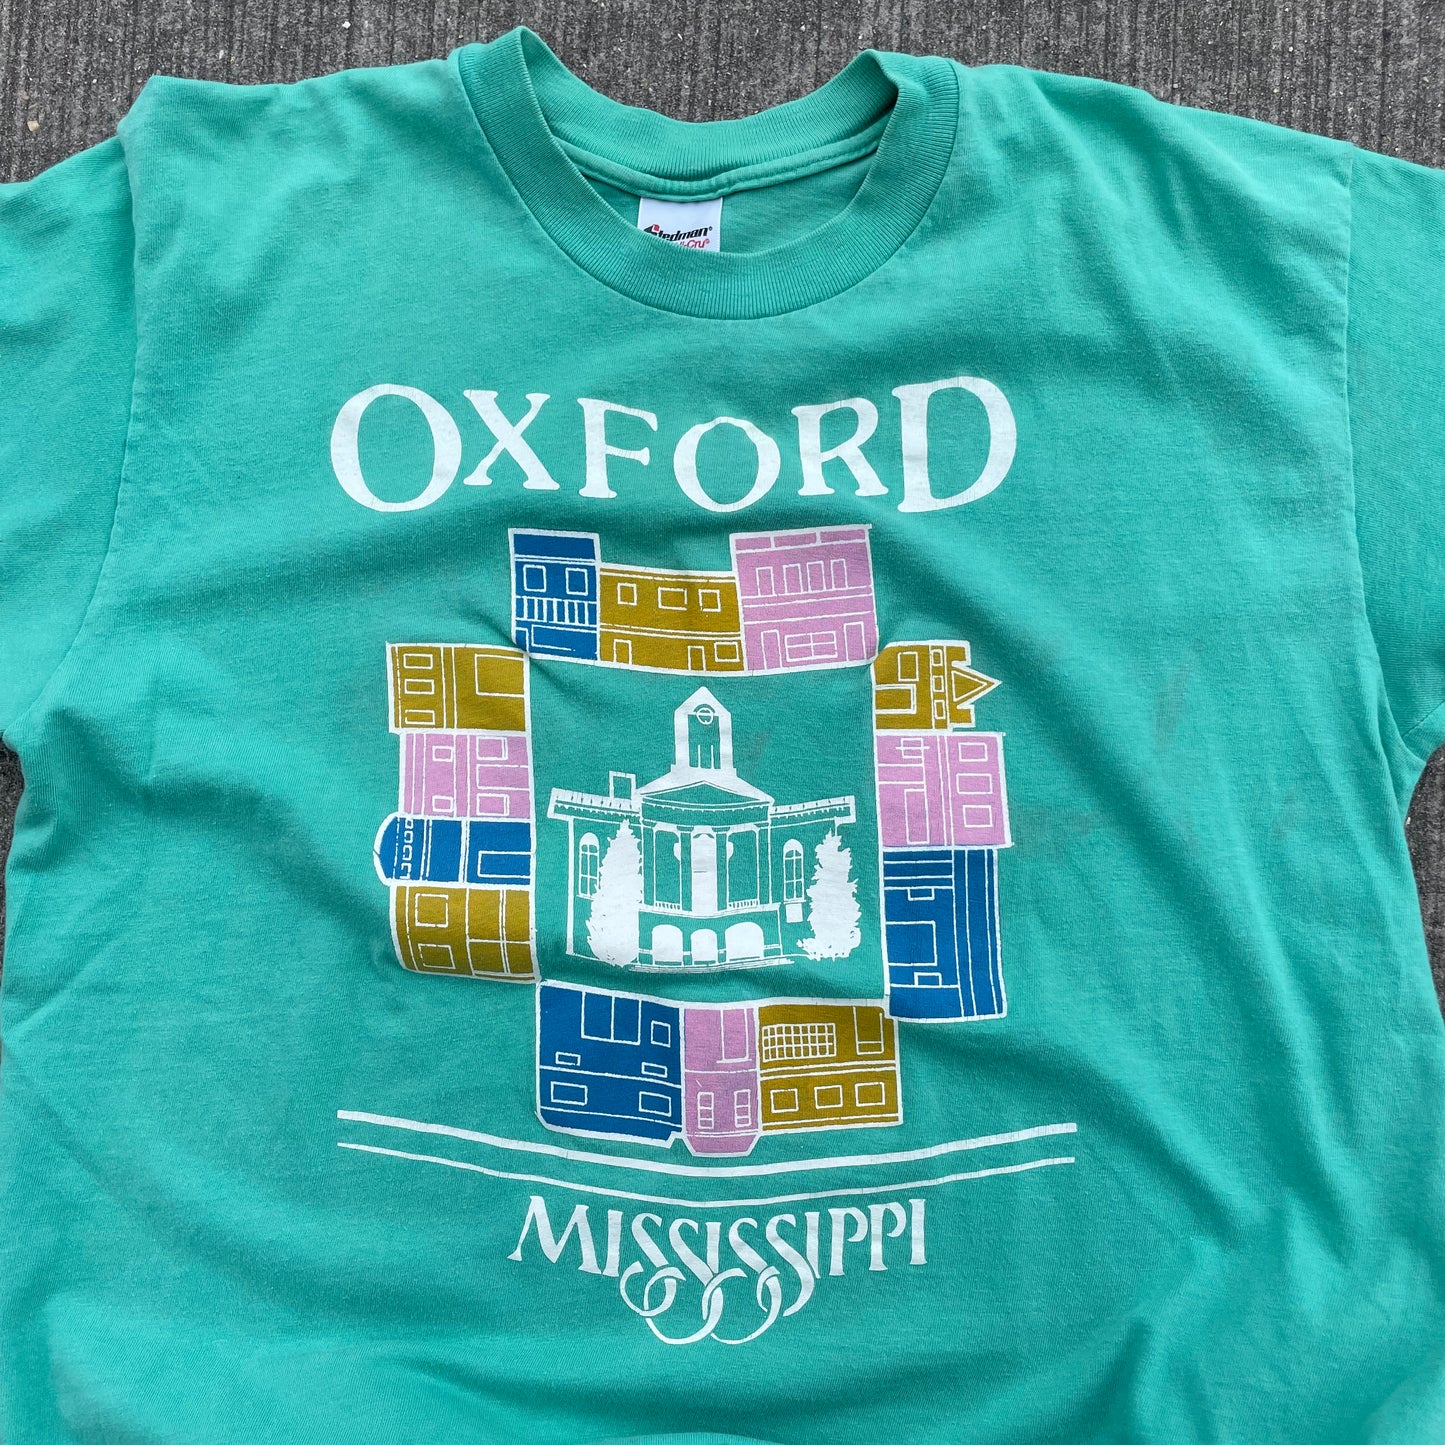 Oxford Mississippi (XL)